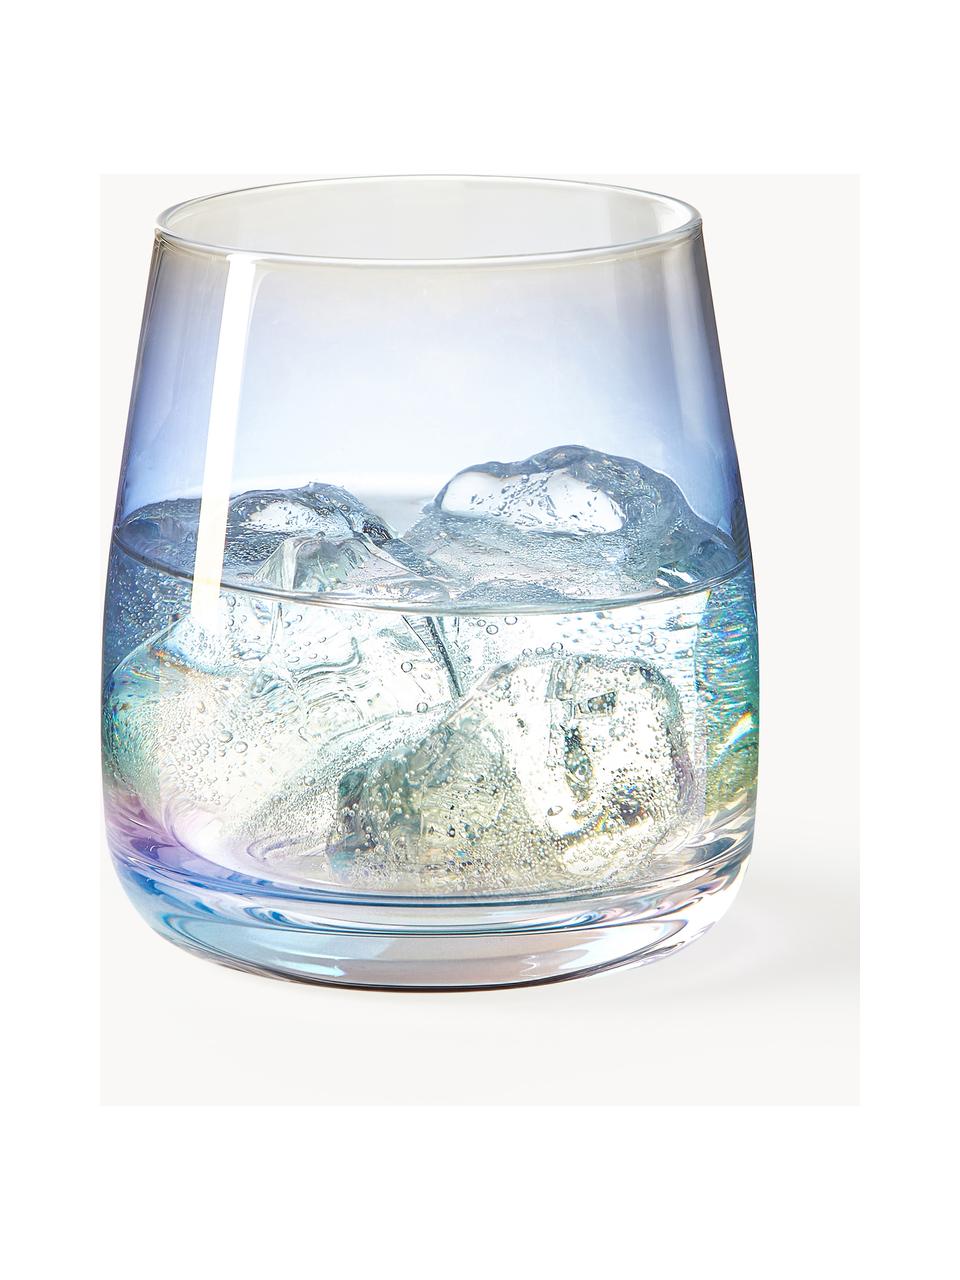 Bicchieri in vetro soffiato iridescente Rainbow 4 pz, Vetro sodico-calcico, soffiato a bocca

Grazie alla sua superficie liscia e non porosa, il vetro sodico-calcico è facile da pulire. Come altri tipi di vetro, è completamente riciclabile e contribuisce quindi a ridurre l'impatto ambientale. Tuttavia, va notato che è sensibile alle fluttuazioni di temperatura, quindi occorre prestare attenzione quando, ad esempio, si versano nel bicchiere liquidi molto caldi., Trasparente, iridescente, Ø 9 x Alt. 10 cm, 370 ml